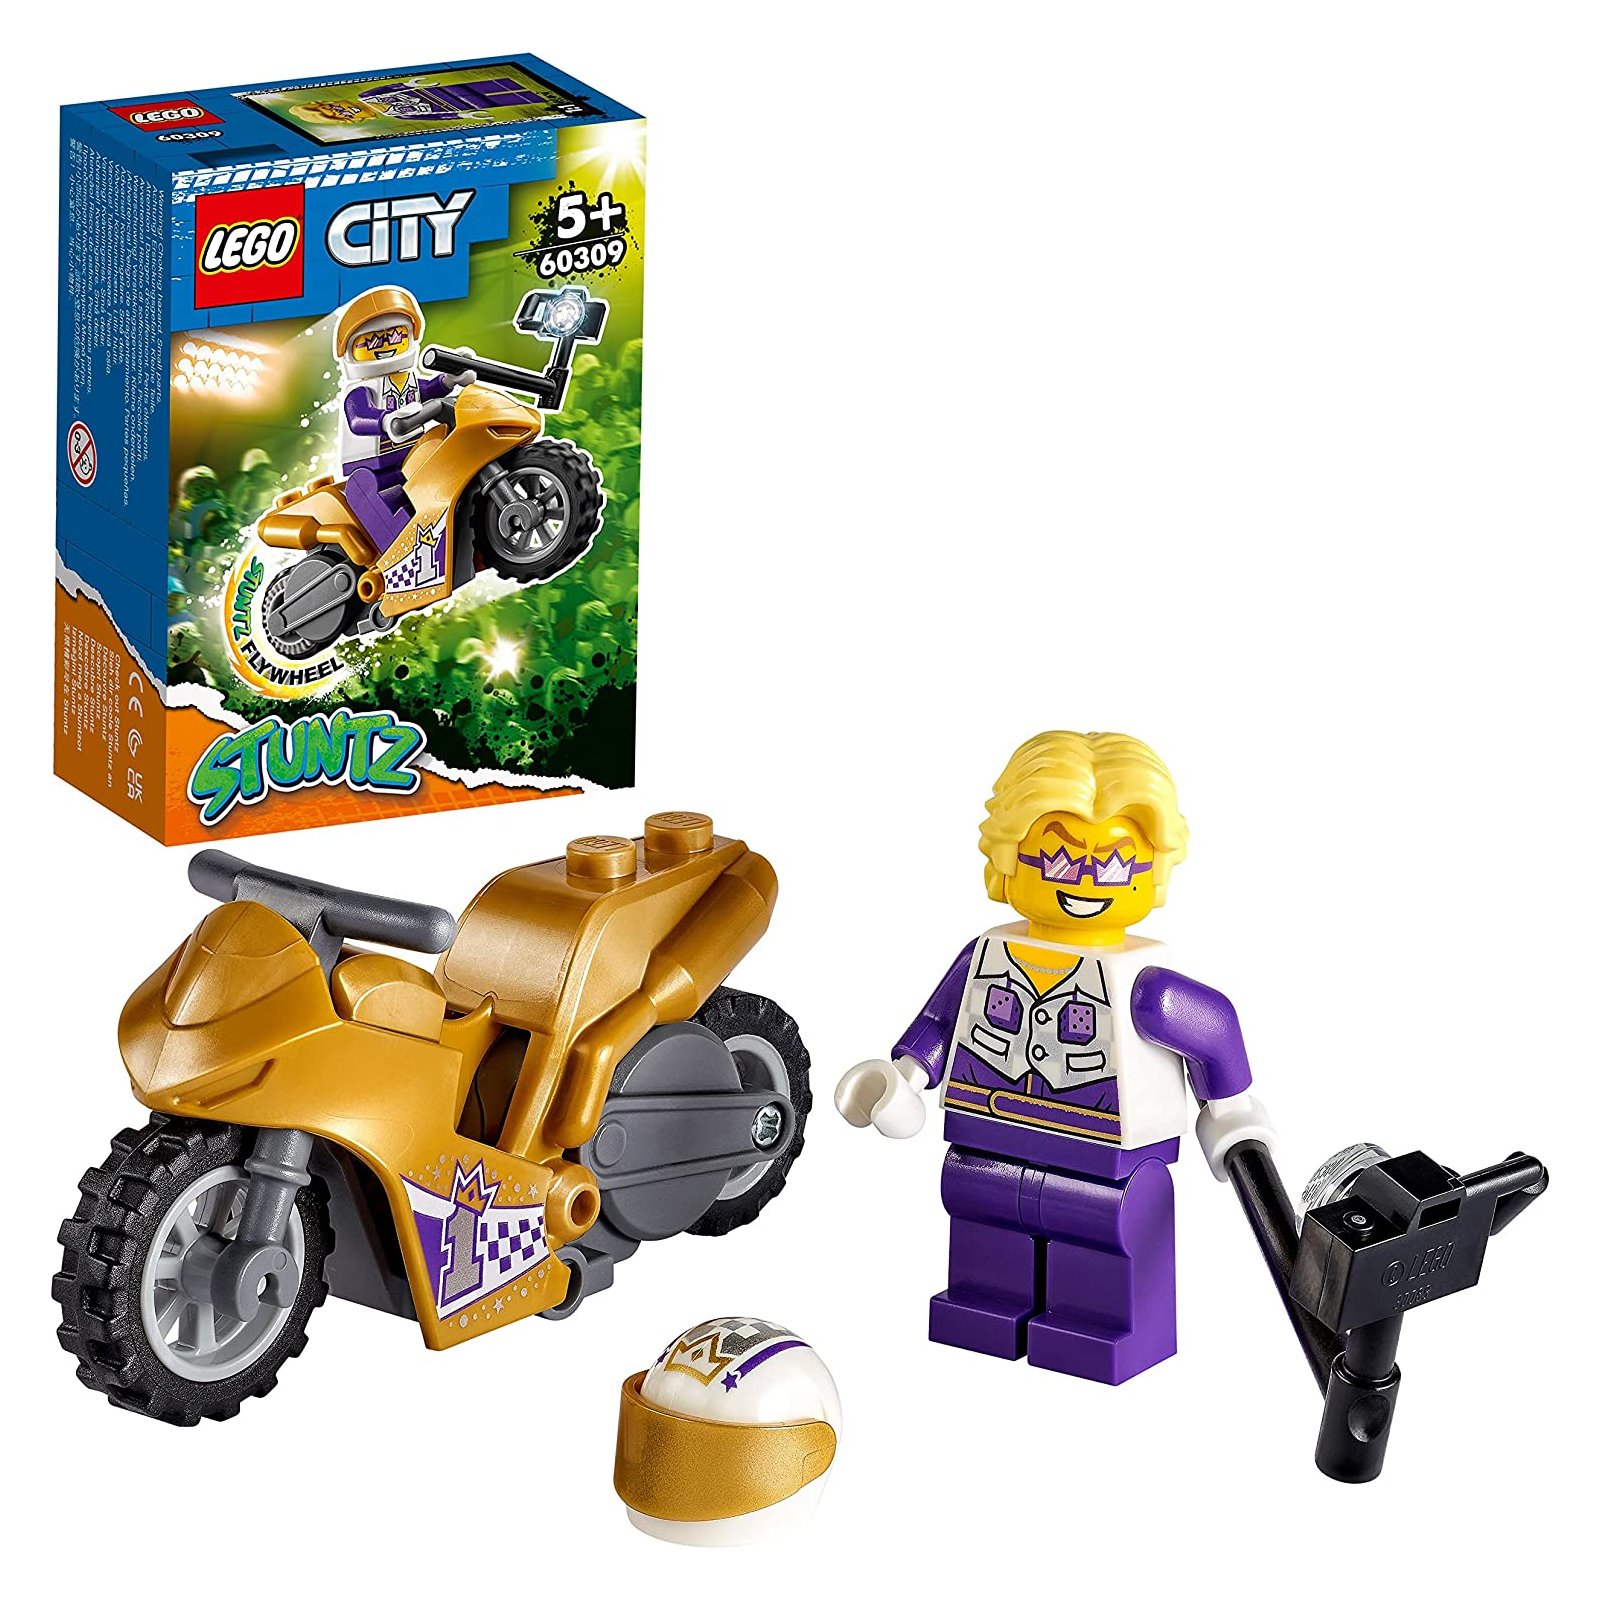 LEGO - City - 60309 Stuntz Selfie-Stuntbike